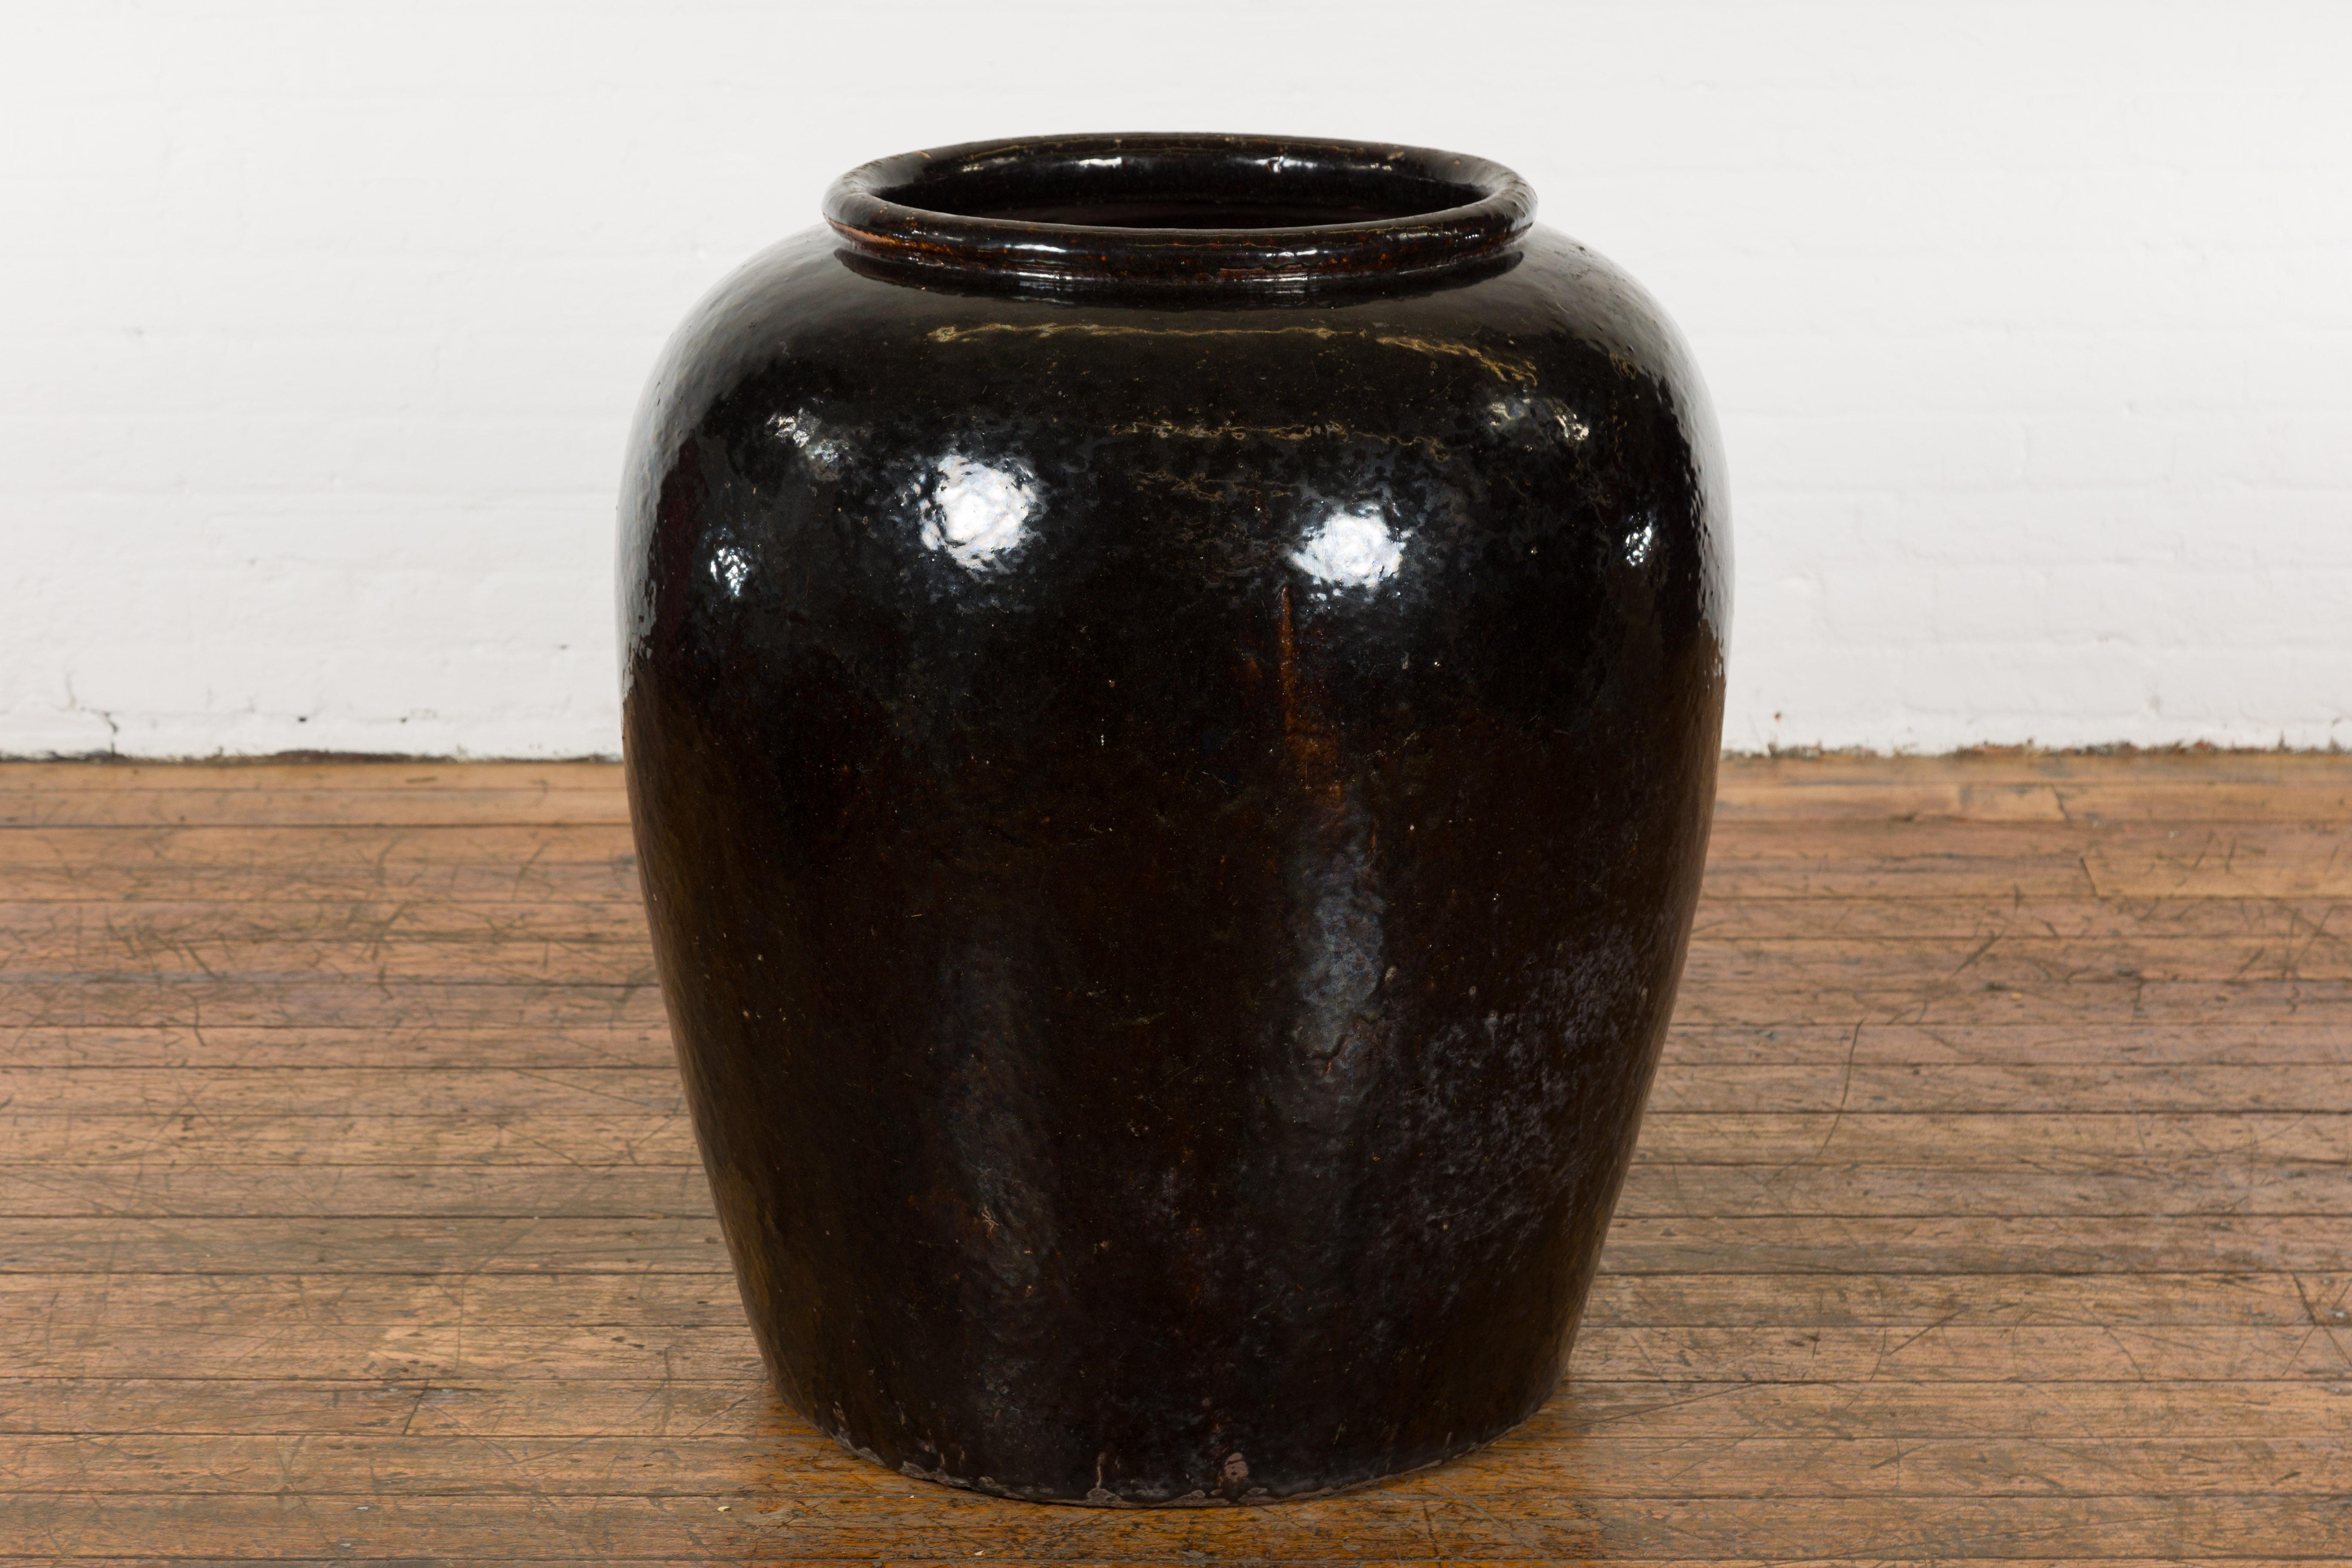 Jardinière thaïlandaise surdimensionnée en céramique noire émaillée du milieu du 20e siècle avec des accents bruns. Créée en Thaïlande au cours de la période du milieu du siècle, cette grande jardinière présente une ouverture circulaire avec une